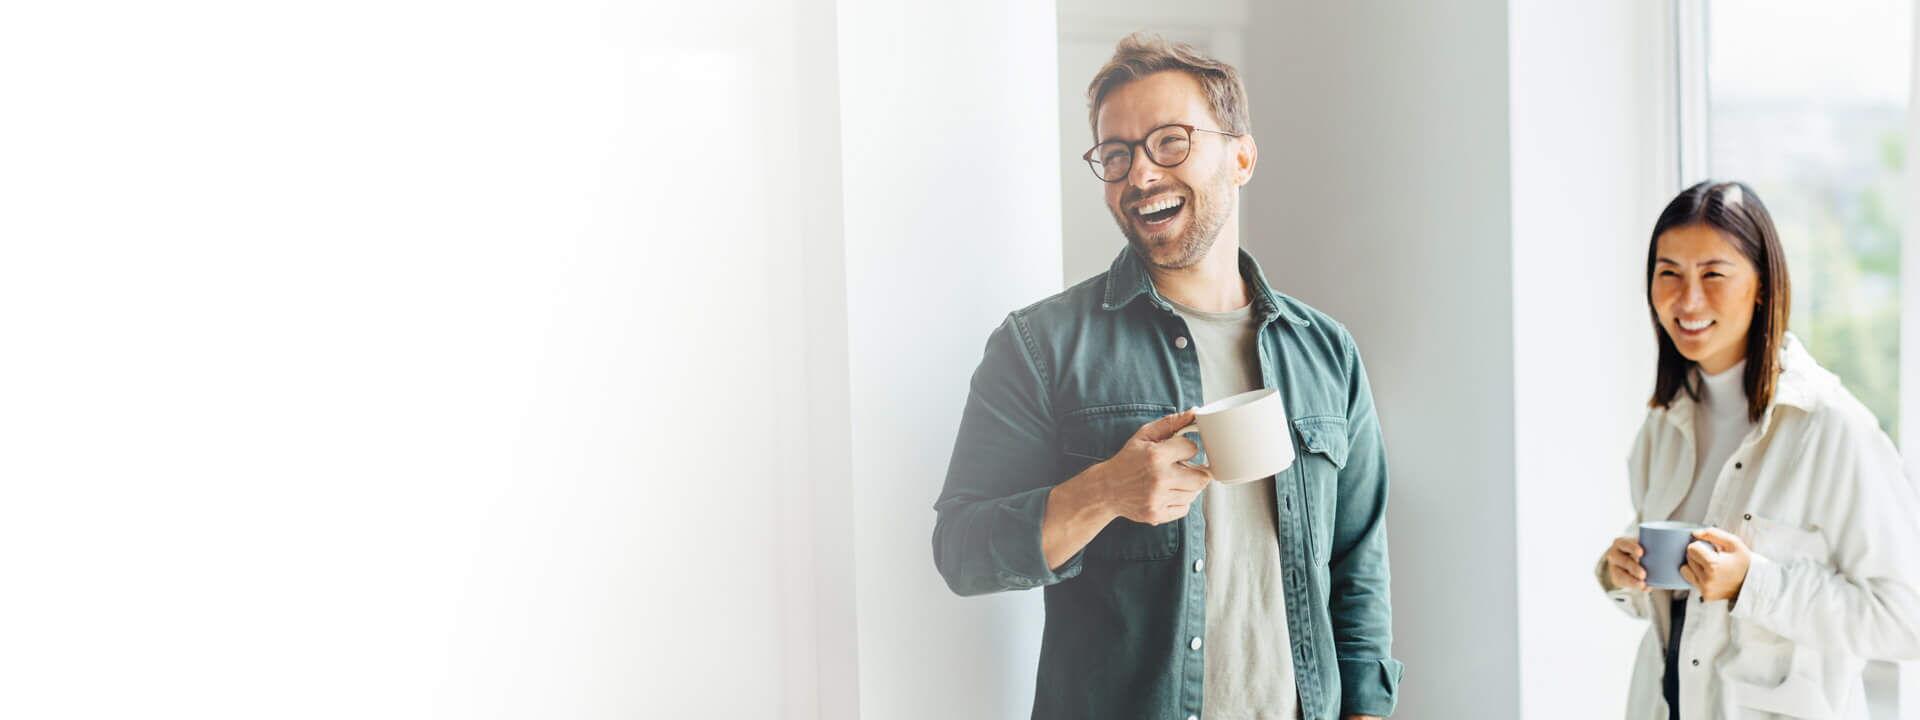 Zwei zufriedene Kunden stehen in einem hellen Raum und genießen eine Tasse Kaffee. Der Mann lacht und trägt eine Brille, während die Frau lächelnd ihre Tasse hält.